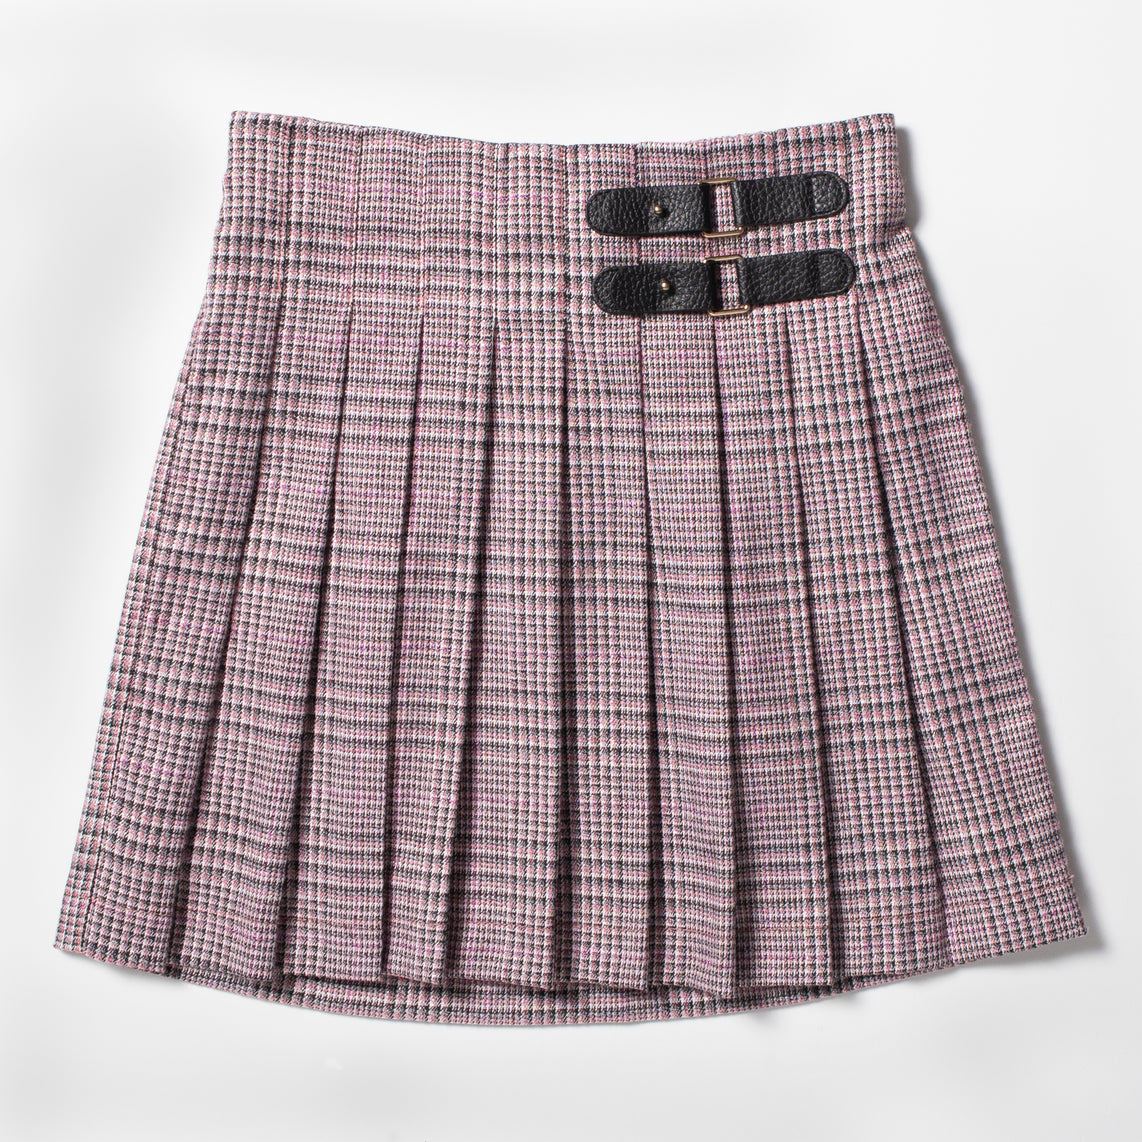 Lurex Plaid Kilt Pull On Pleated Plaid Skirt